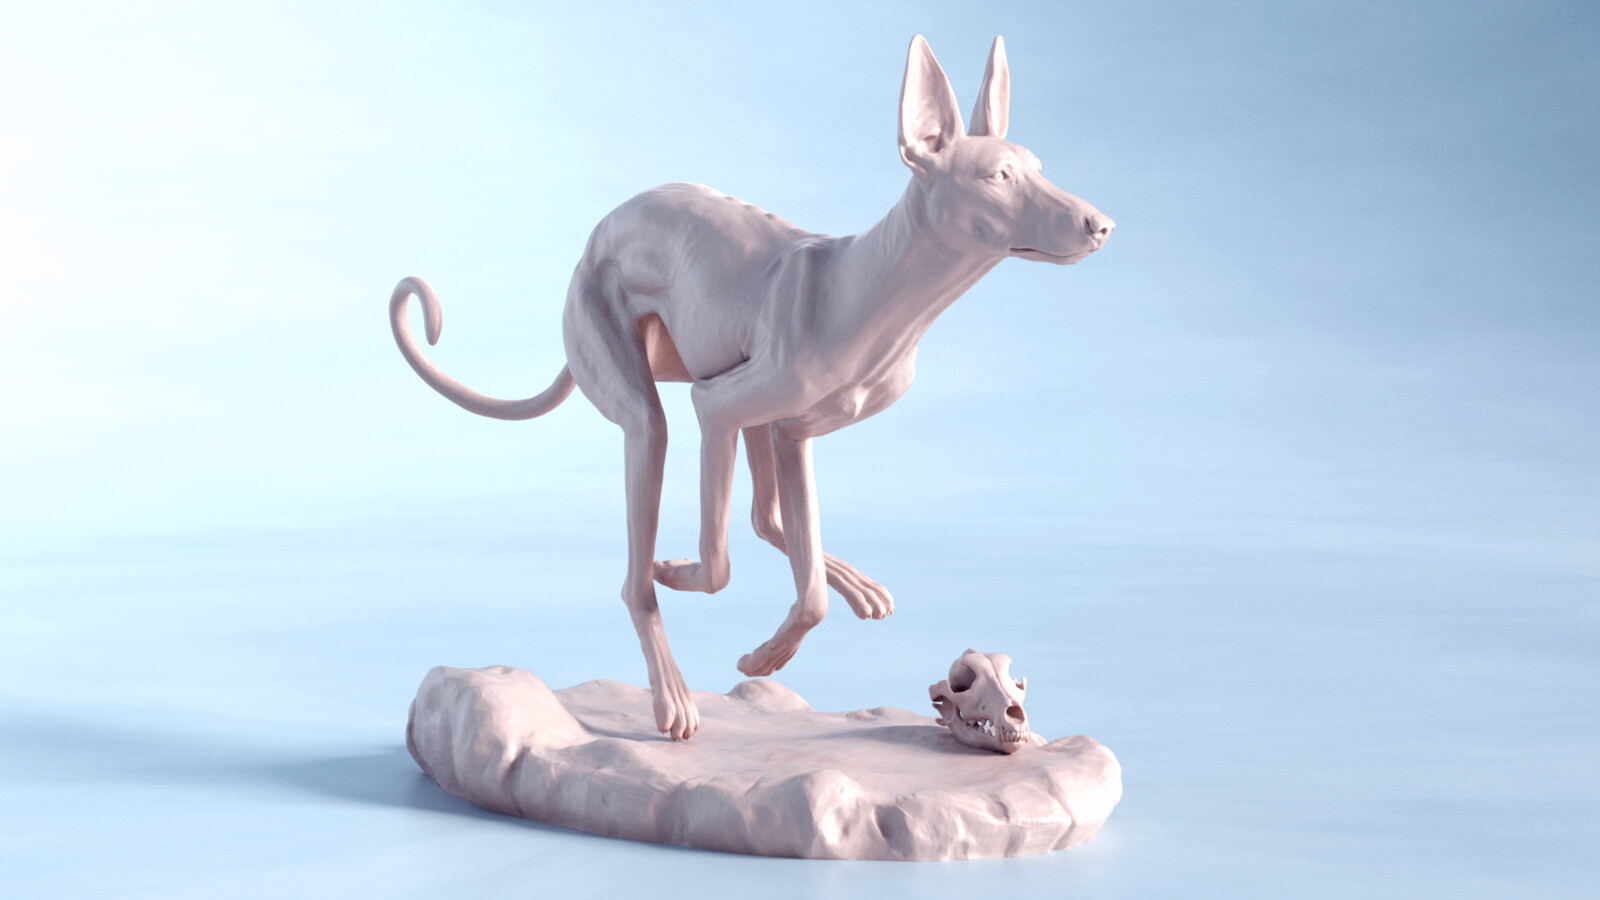 Hound sculpture | Anatomy study